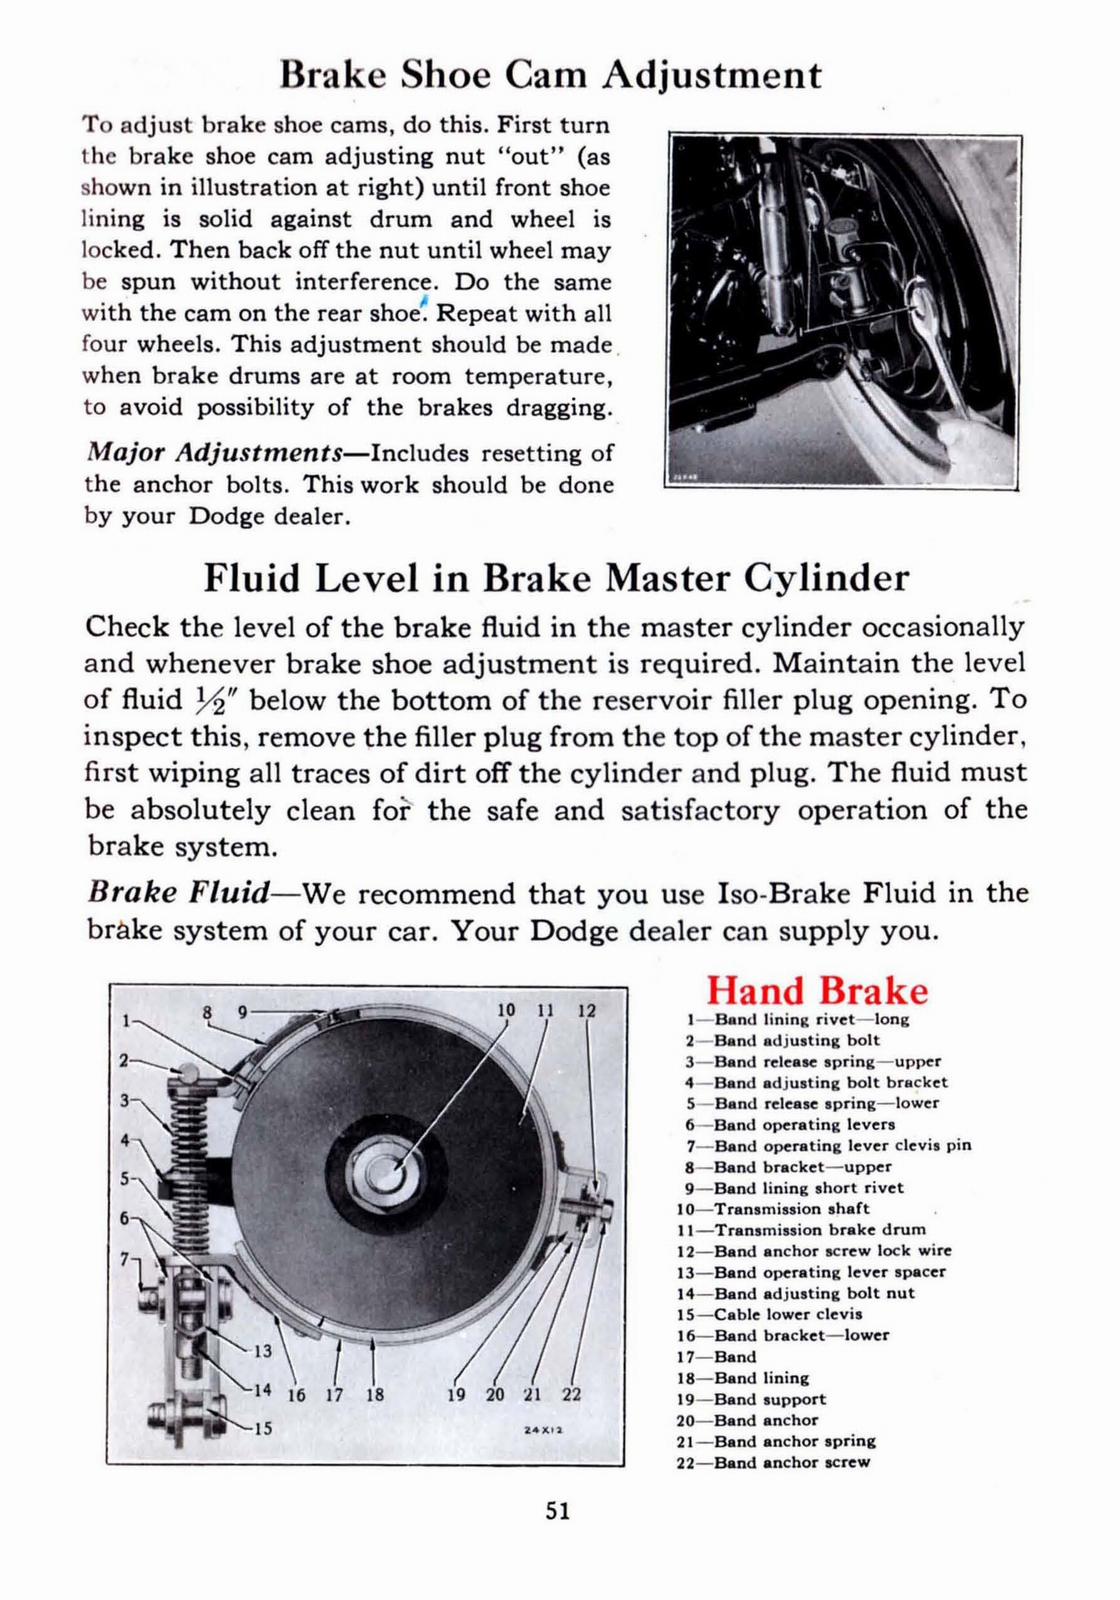 n_1941 Dodge Owners Manual-51.jpg